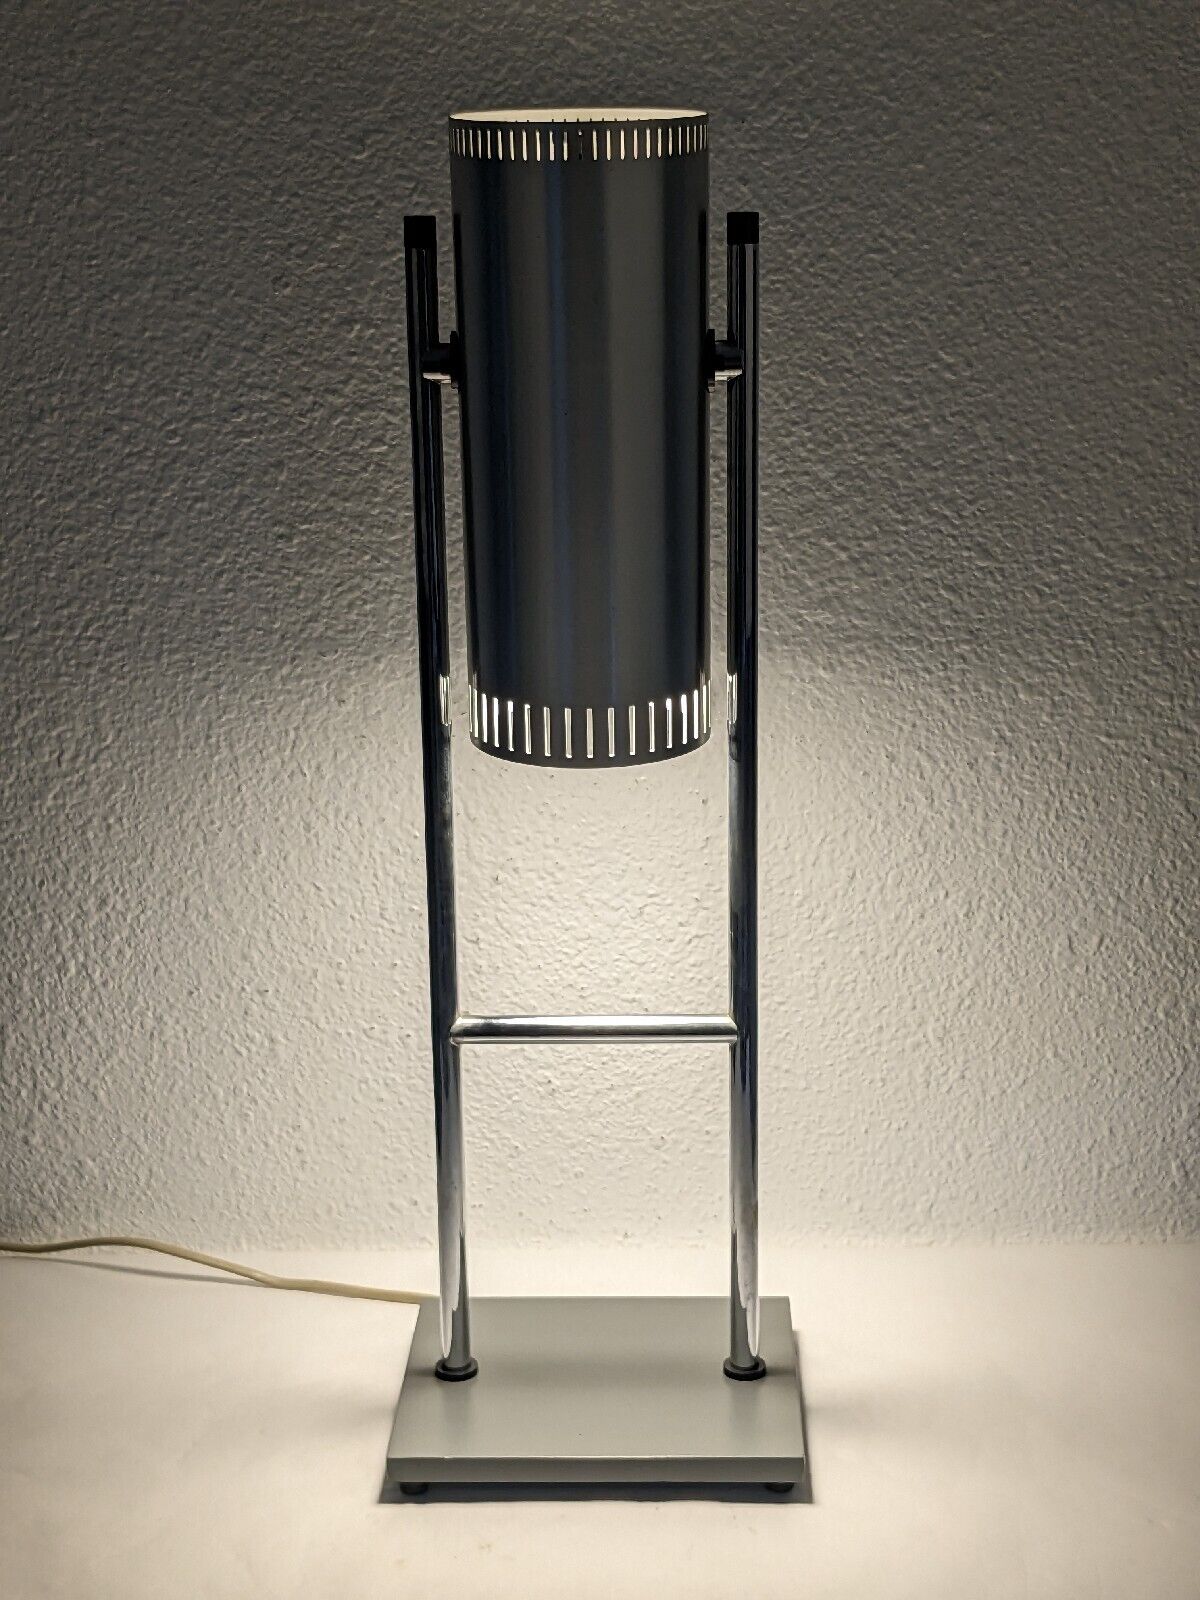 Vtg Trombone Jo Hammerborg Table Lamp for Fog & Mørup Chrome Brushed Steel MCM